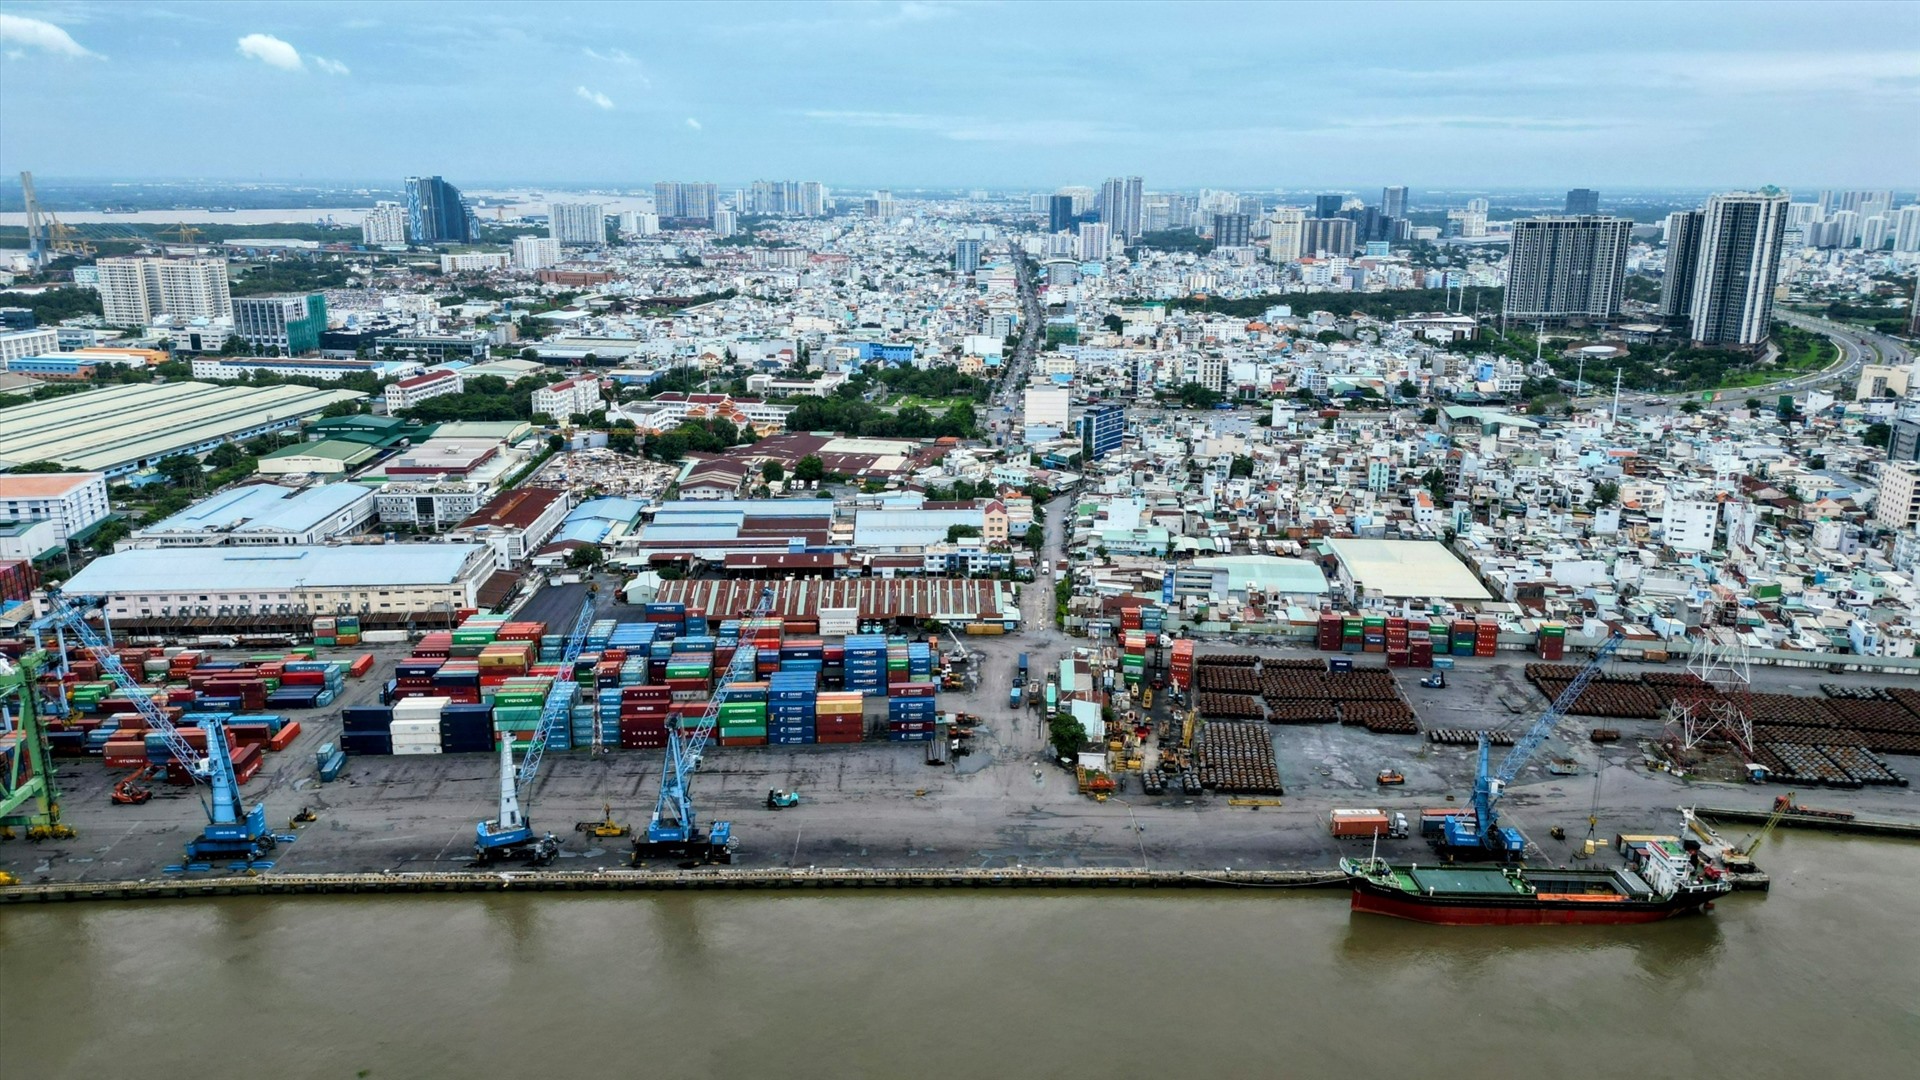 Đầu còn lại của cầu Thủ Thiêm 4 là khu vực cảng Tân Thuận, hiện đây là cảng hàng hóa với nhiều tàu hàng ra vào, container chất đầy cảng. Xung quanh đó là khu vực nhà dân, xa ra phía ngoài là kết nối vào mạng lưới giao thông như đường Huỳnh Tấn Phát, đường Nguyễn Văn Linh.